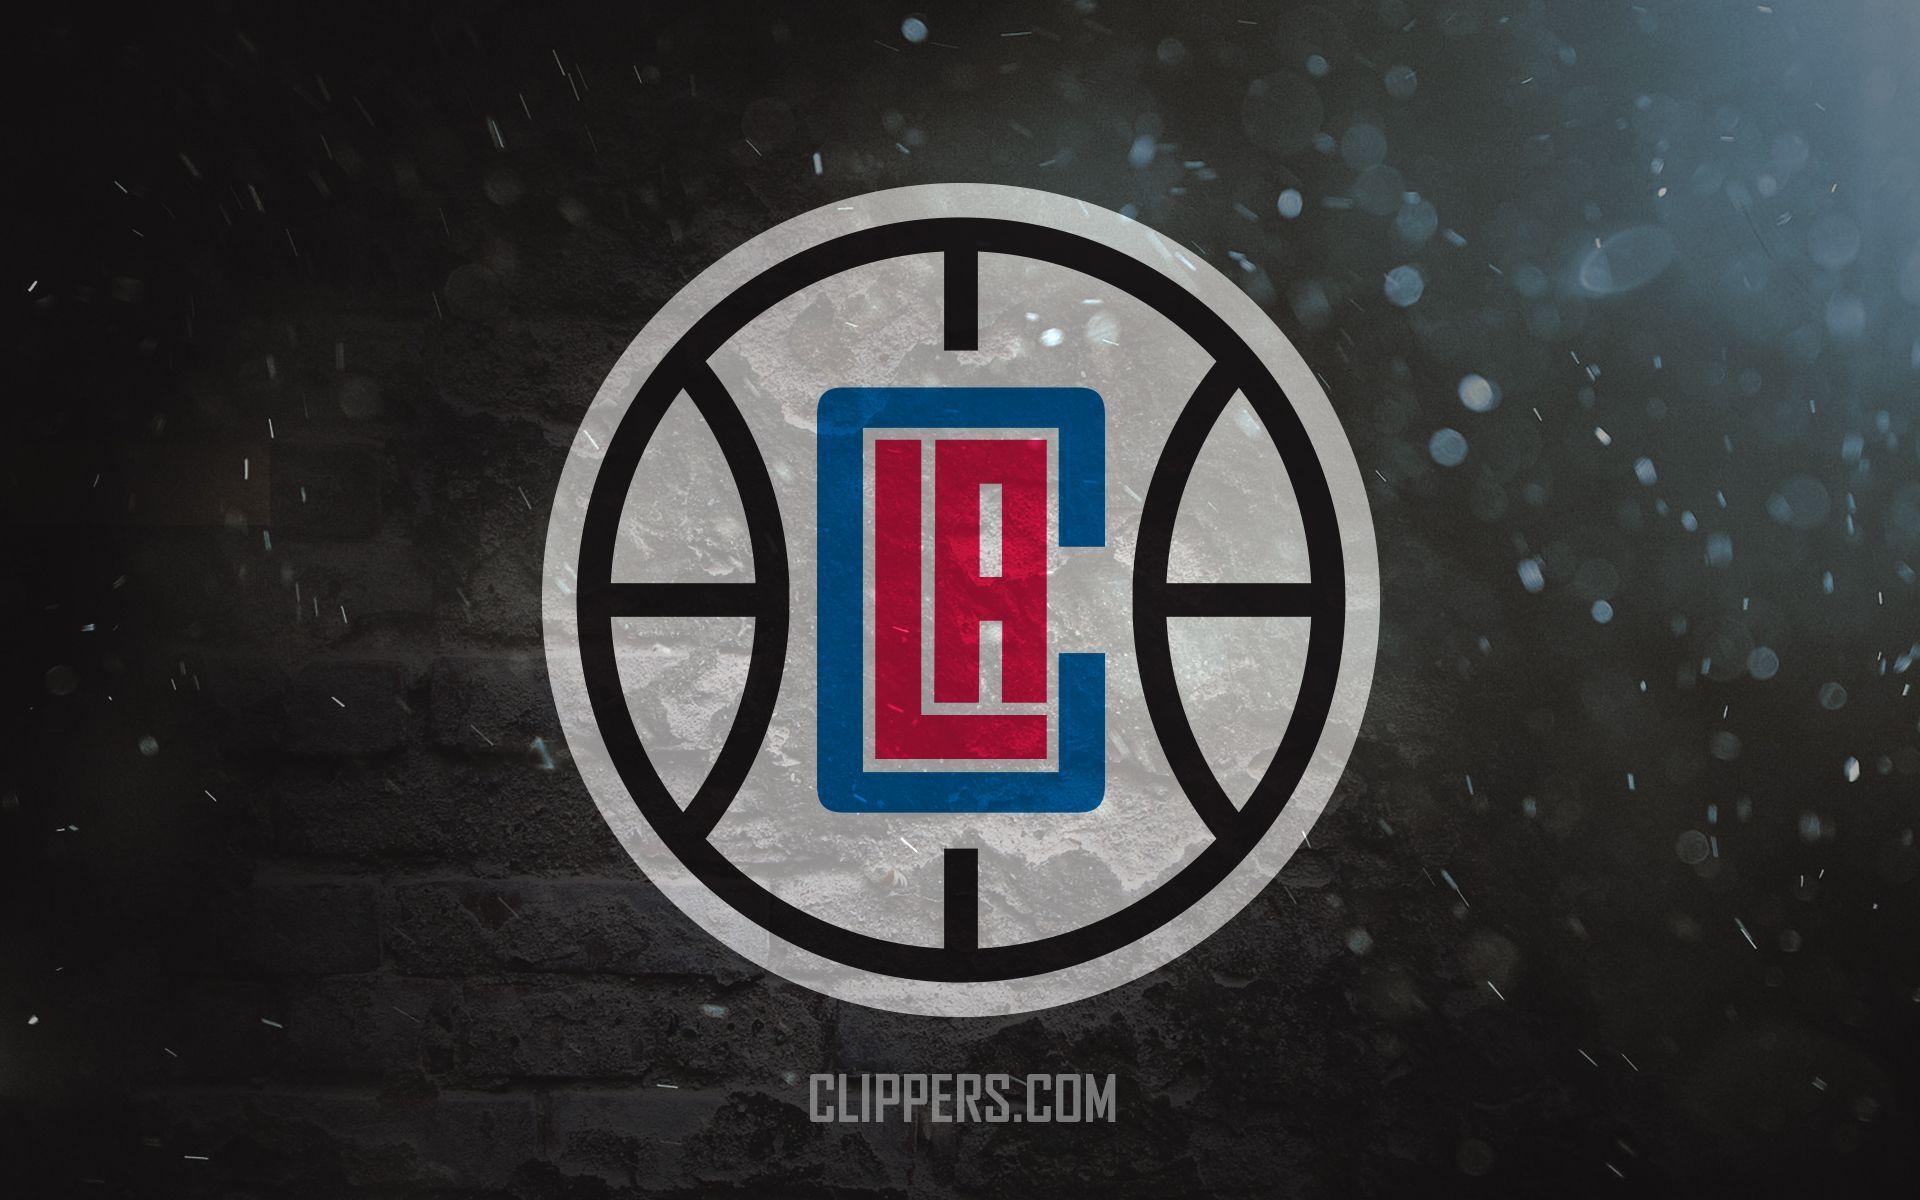 LA Clippers Logo Wallpaper. LA Clippers. Logos